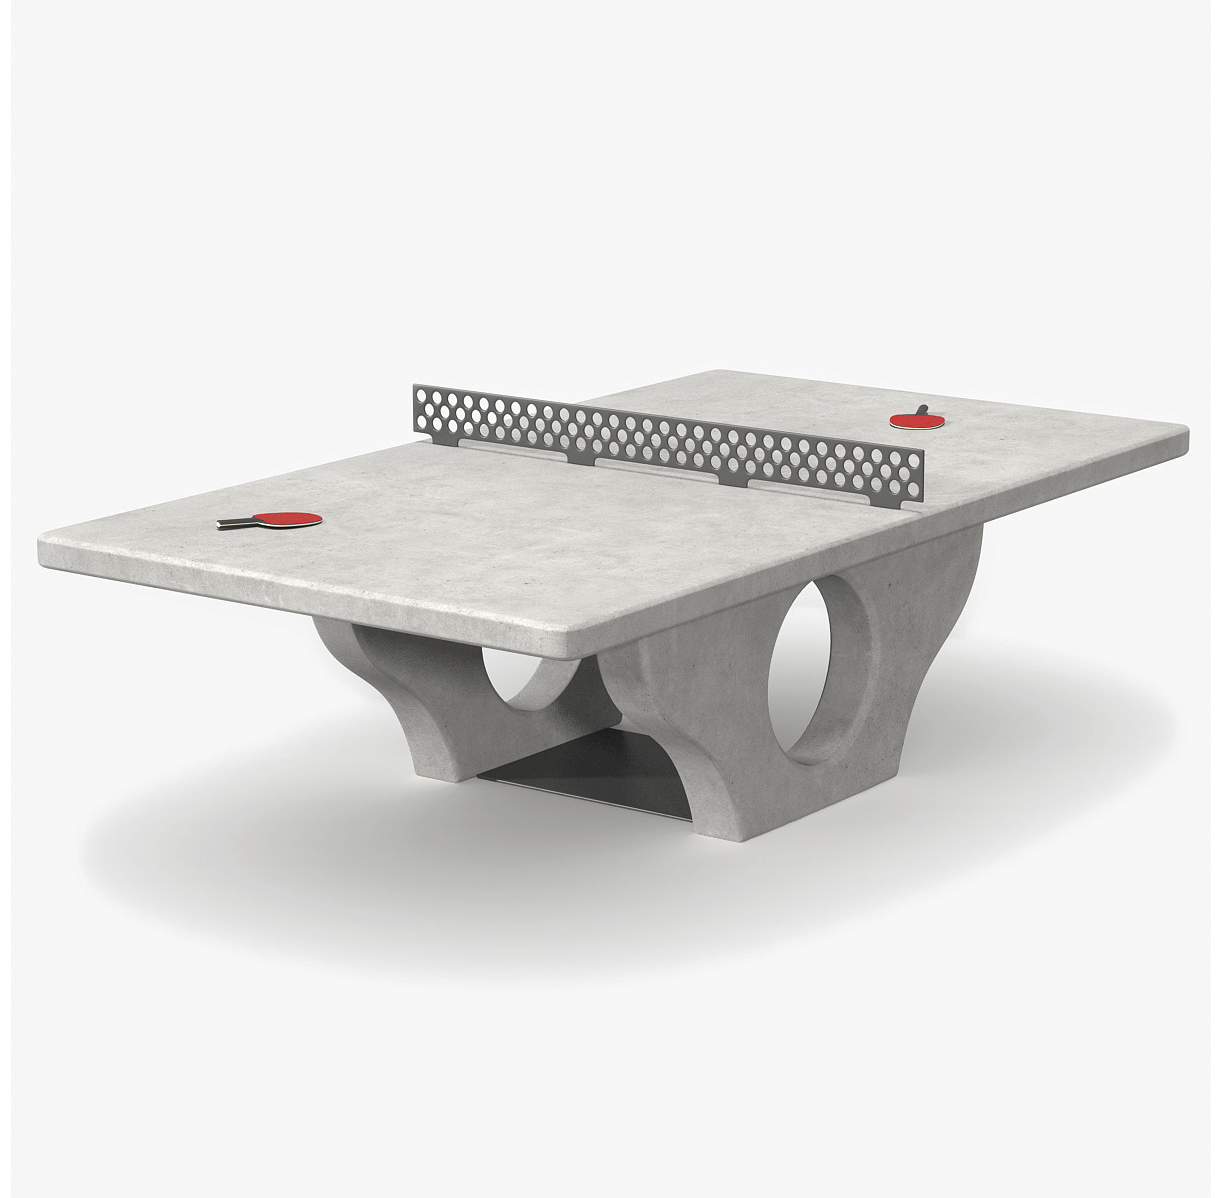 Стол для пинг понга из бетона